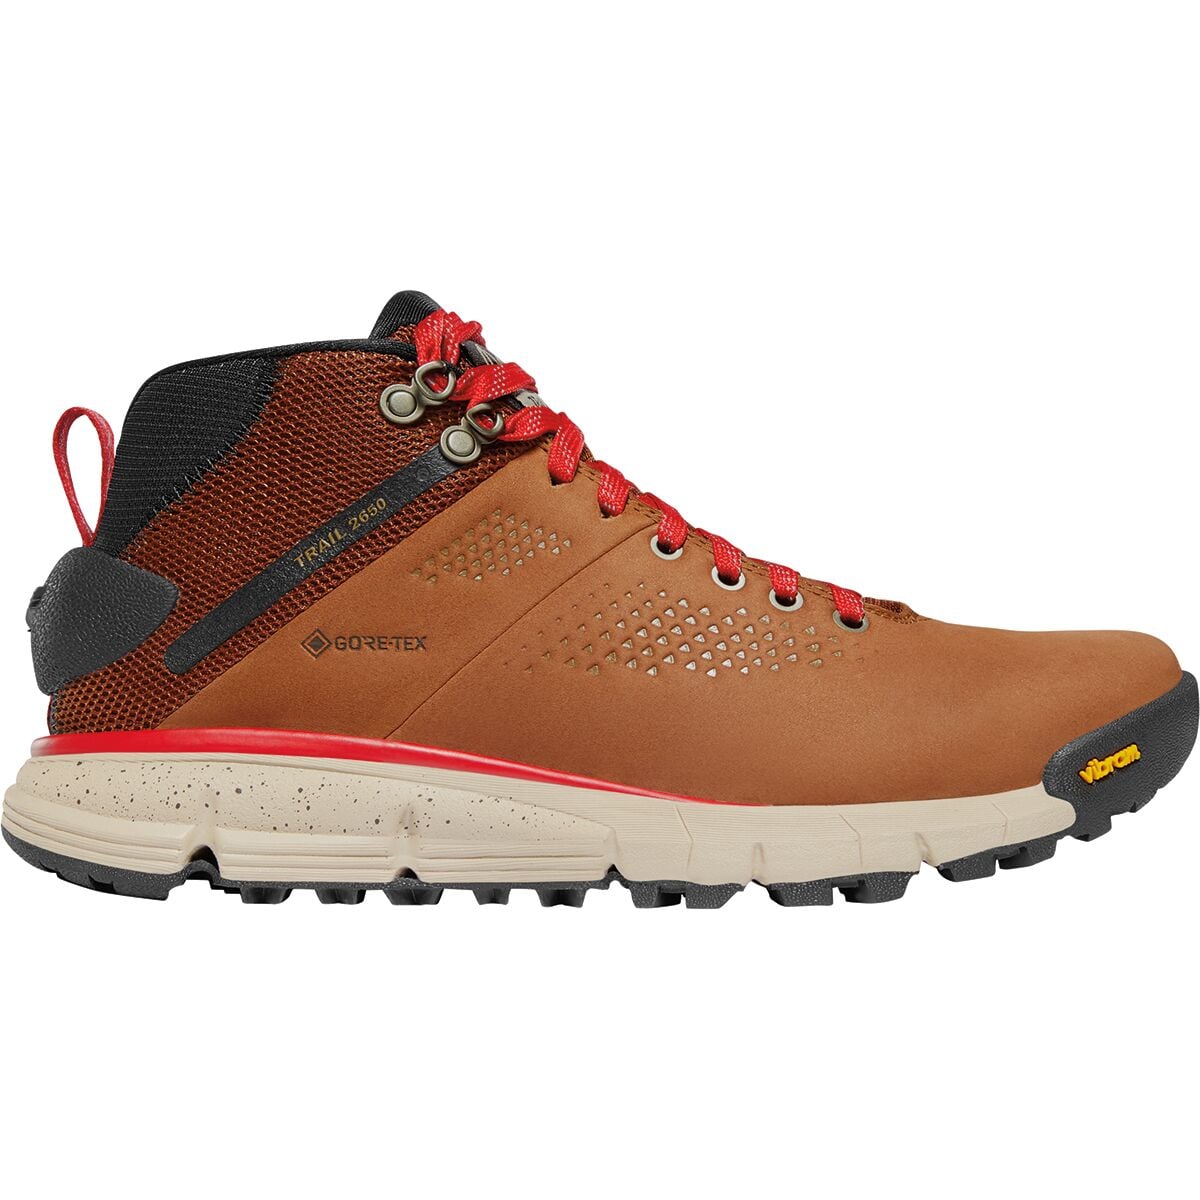 Trail 2650 GTX Mid Hiking Boot - Women